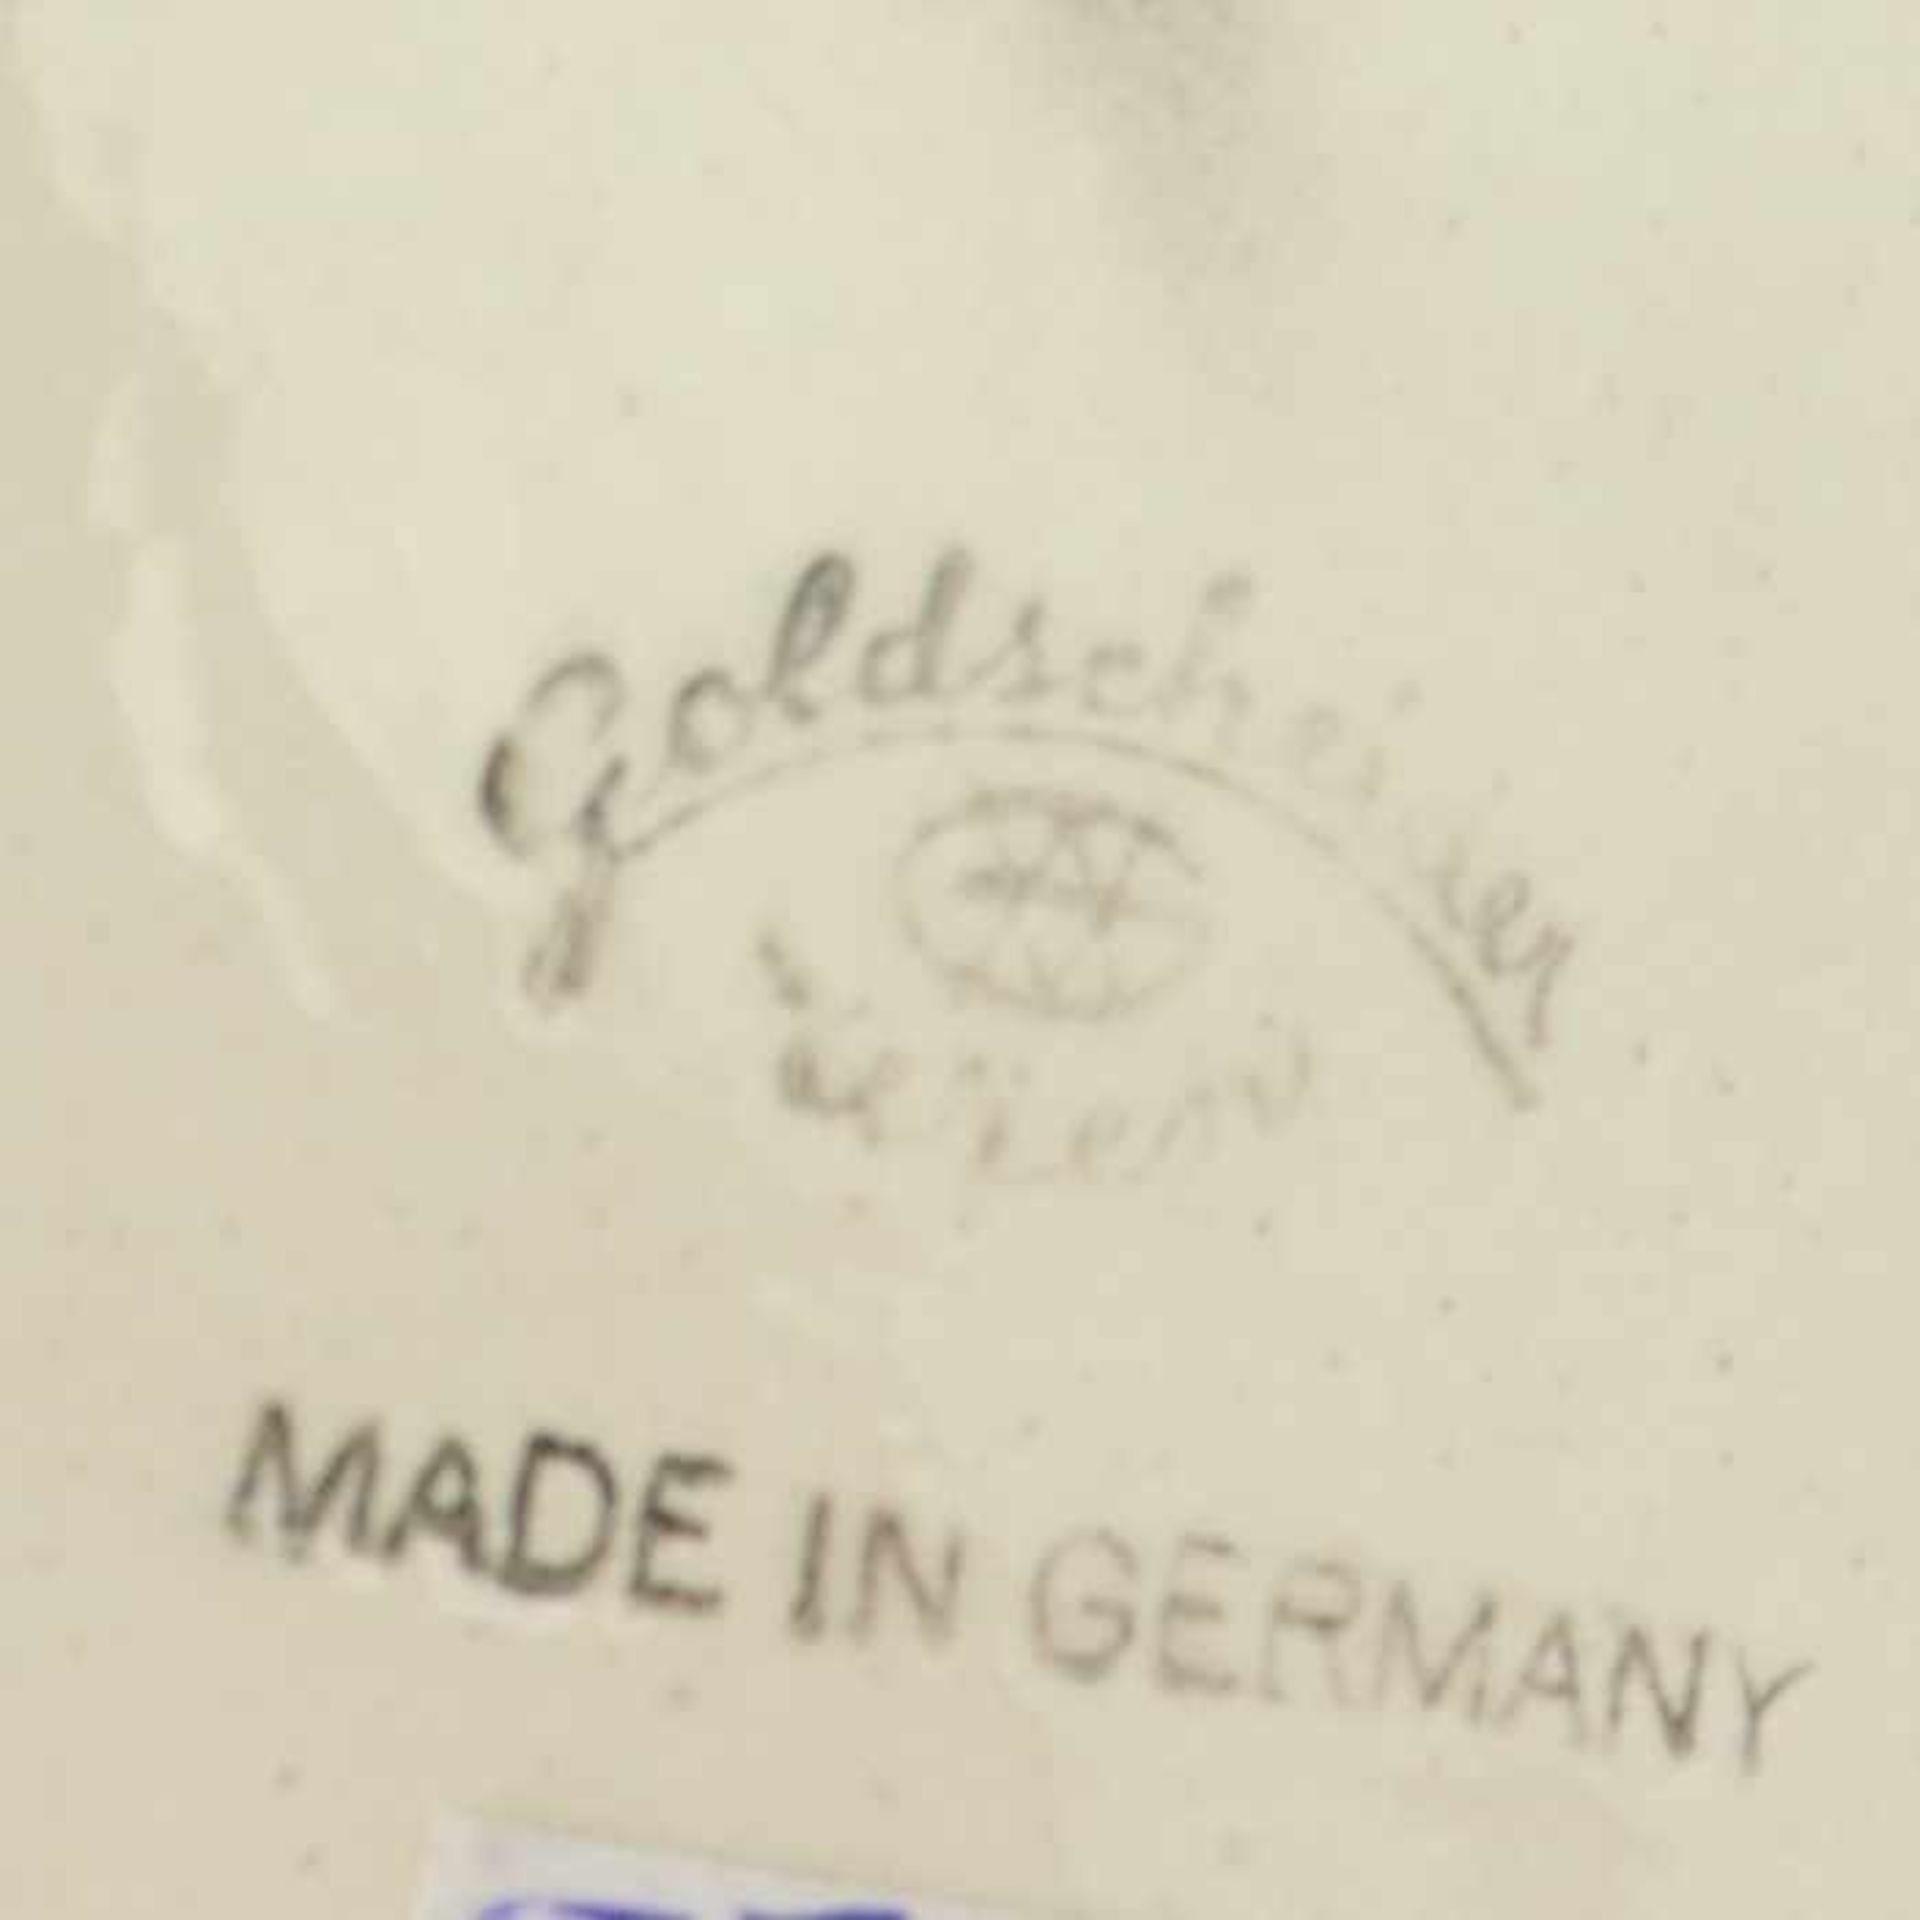 Goldscheider - KinderpaarStempelmarke, Goldscheider Wien, Made in Germany, Modellnr. 2367, Entw. - Image 3 of 12